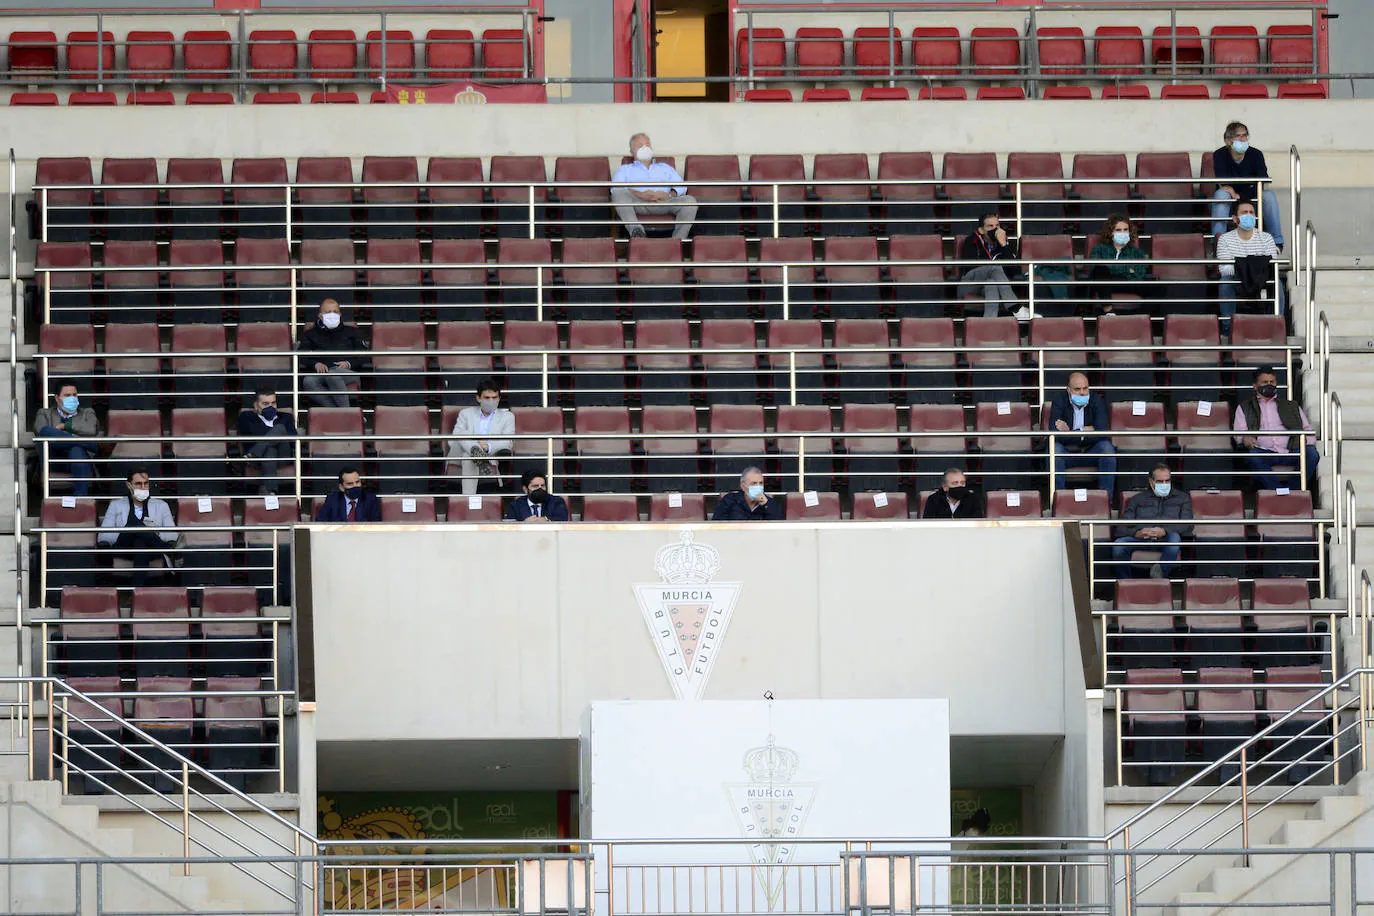 Fotos: El triunfo grana ante el Linares Deportivo, en imágenes